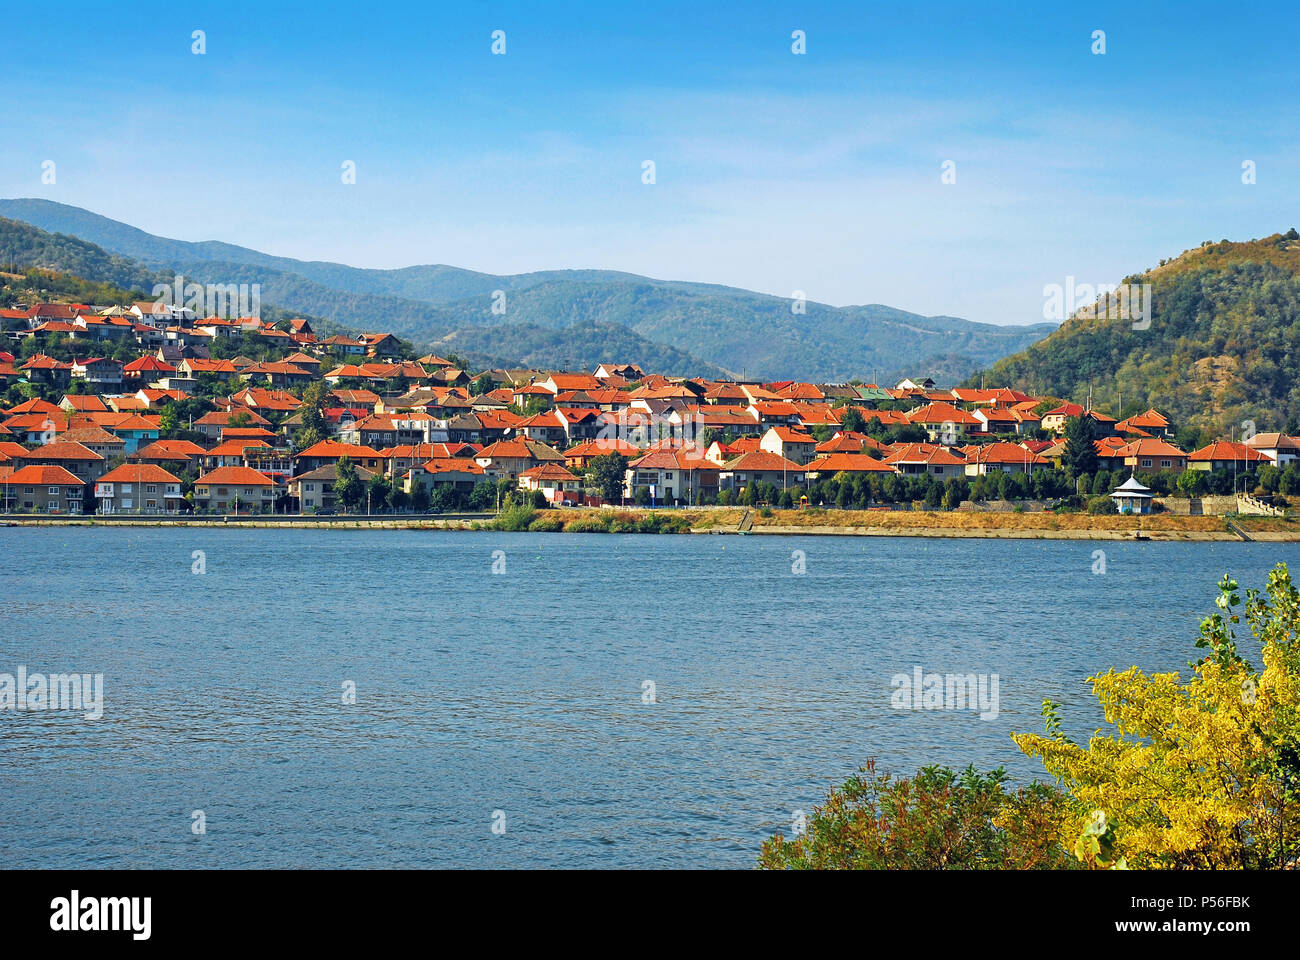 Panorama von einer rumänischen Stadt an der Donau Ufer Stockfoto